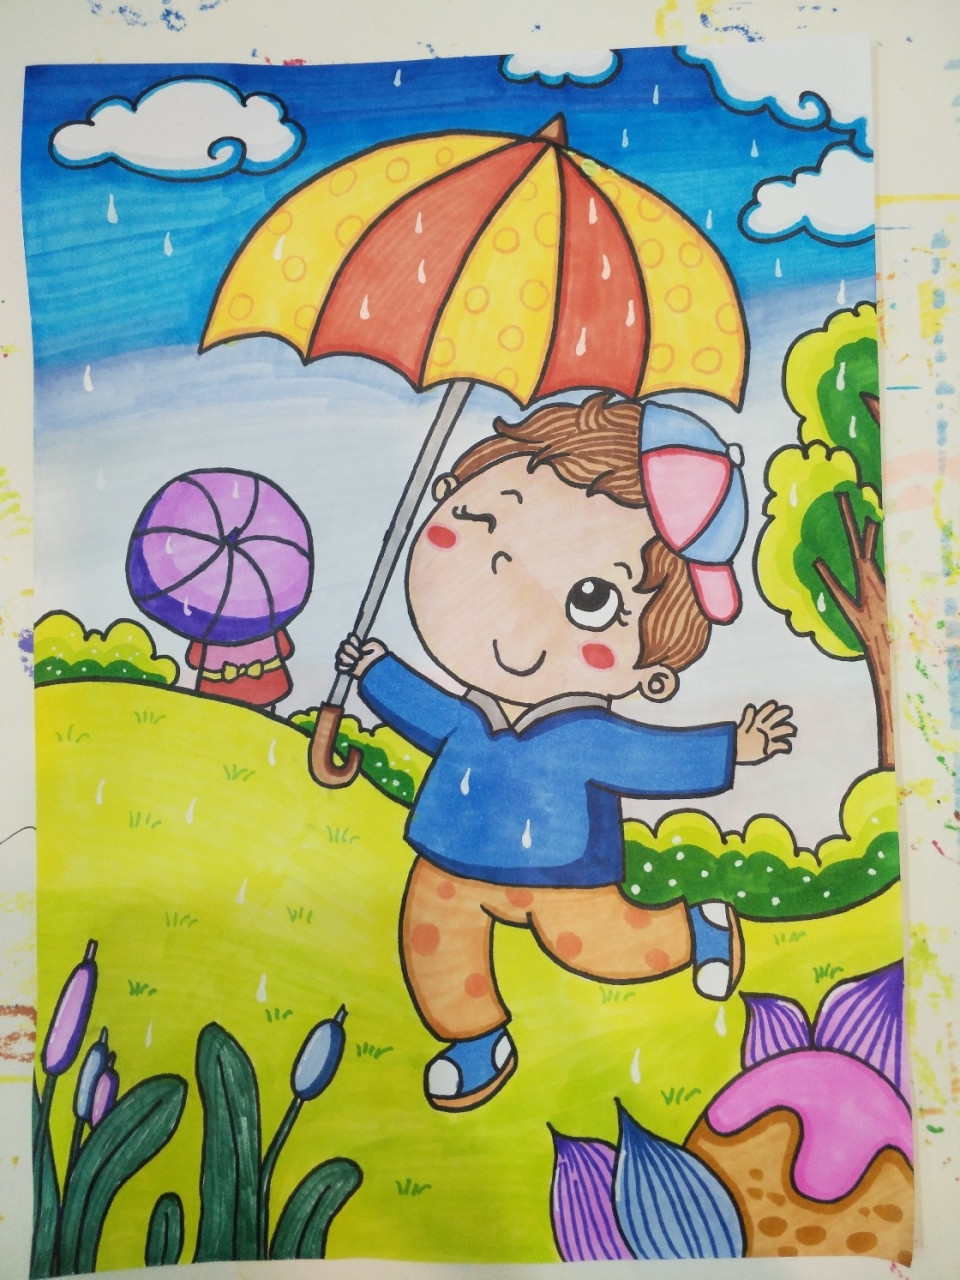 下雨啦打雨伞男孩简笔画儿童画马克笔 临摹